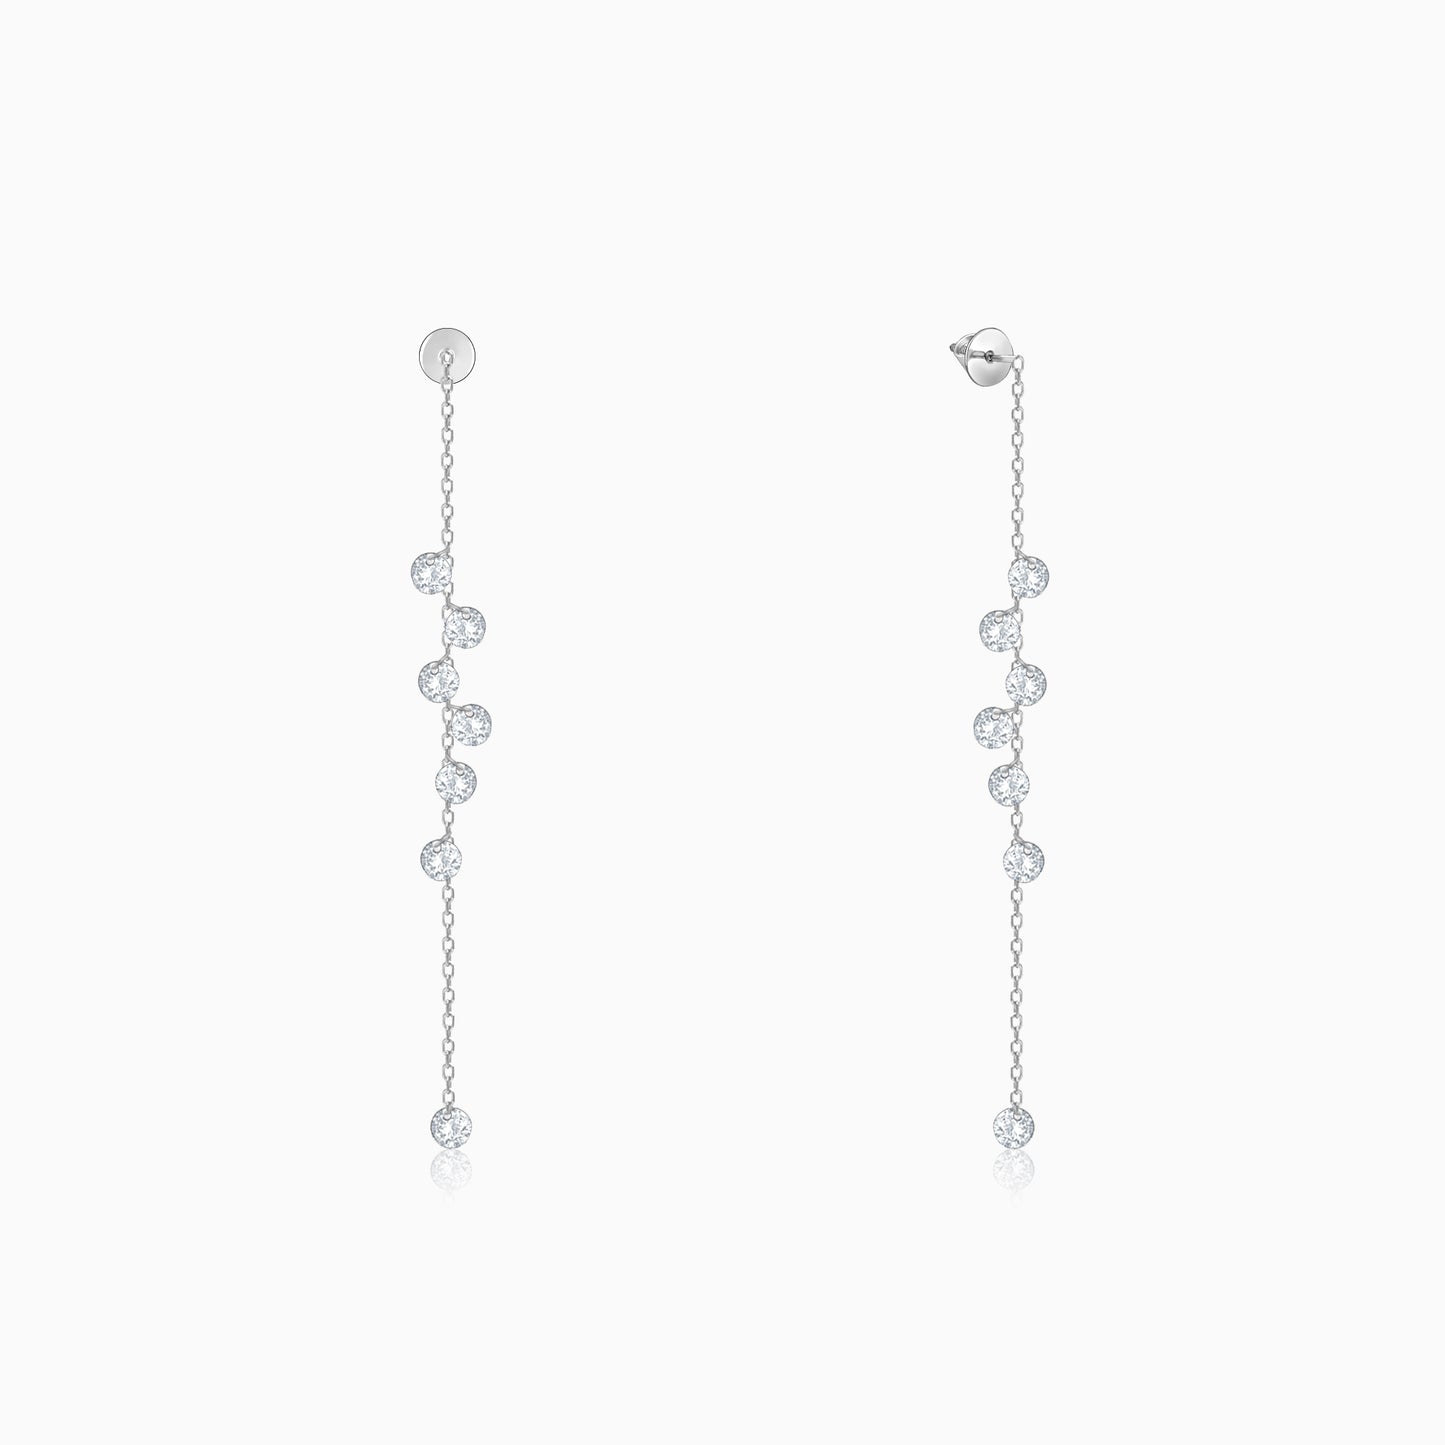 Silver Dangling Chain Earrings